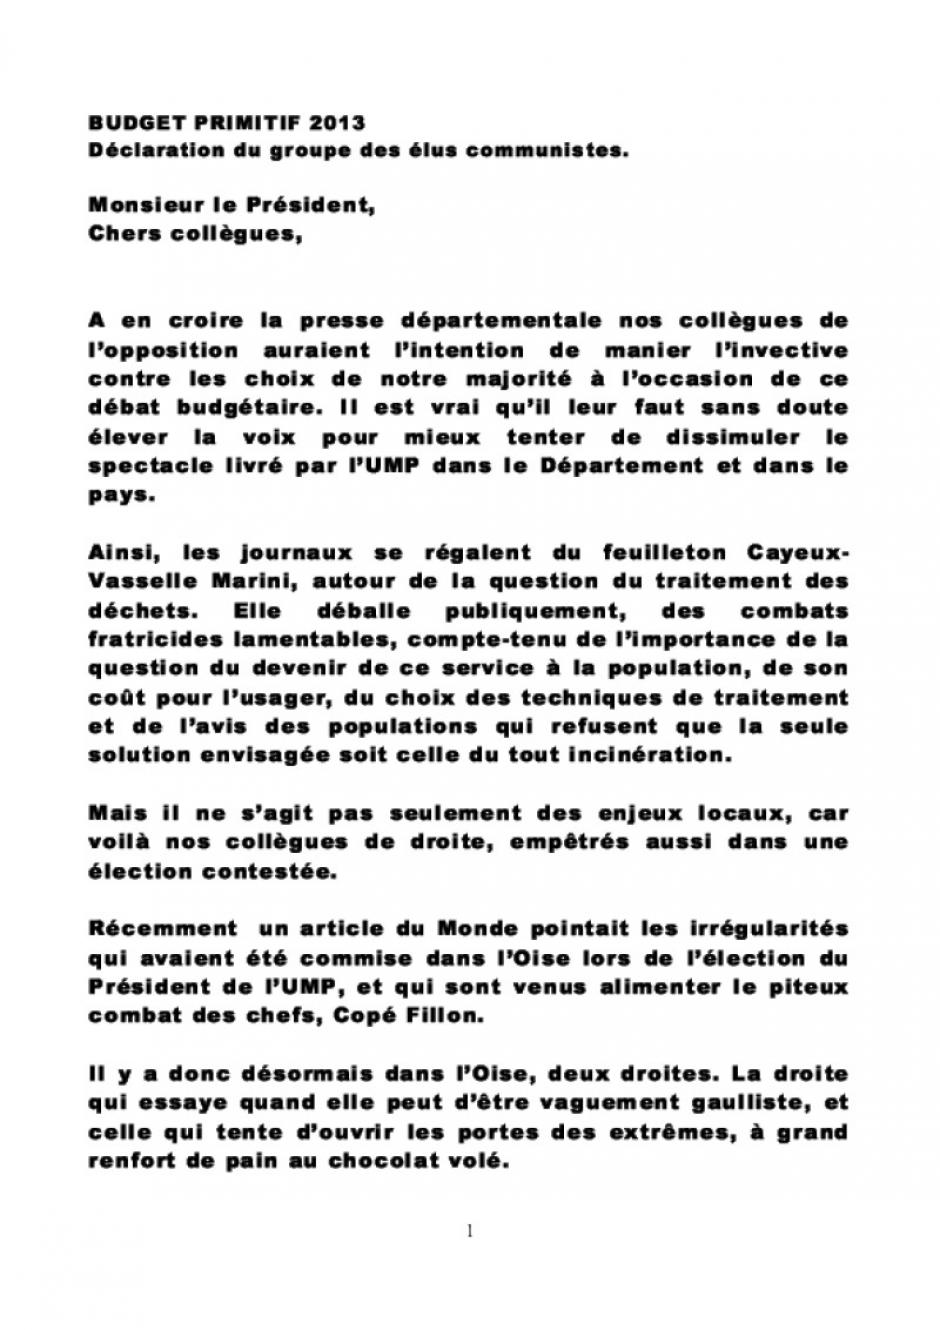 Déclaration du groupe des élu-e-s communistes du Conseil général à propos du budget primitif 2013 - Oise, 20 décembre 2012